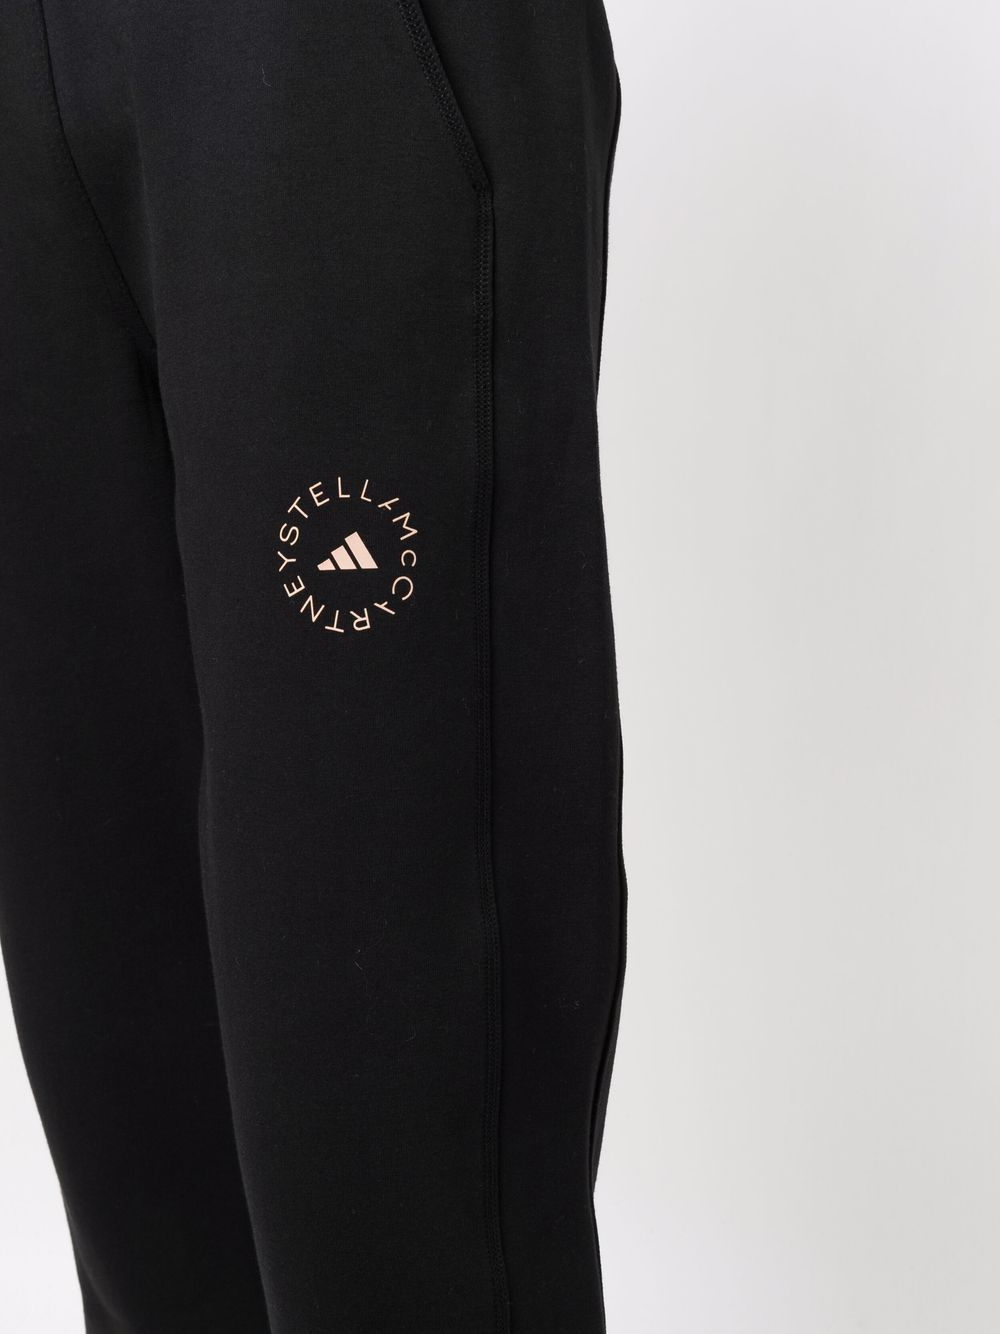 фото Adidas by stella mccartney спортивные брюки с эластичным поясом и логотипом